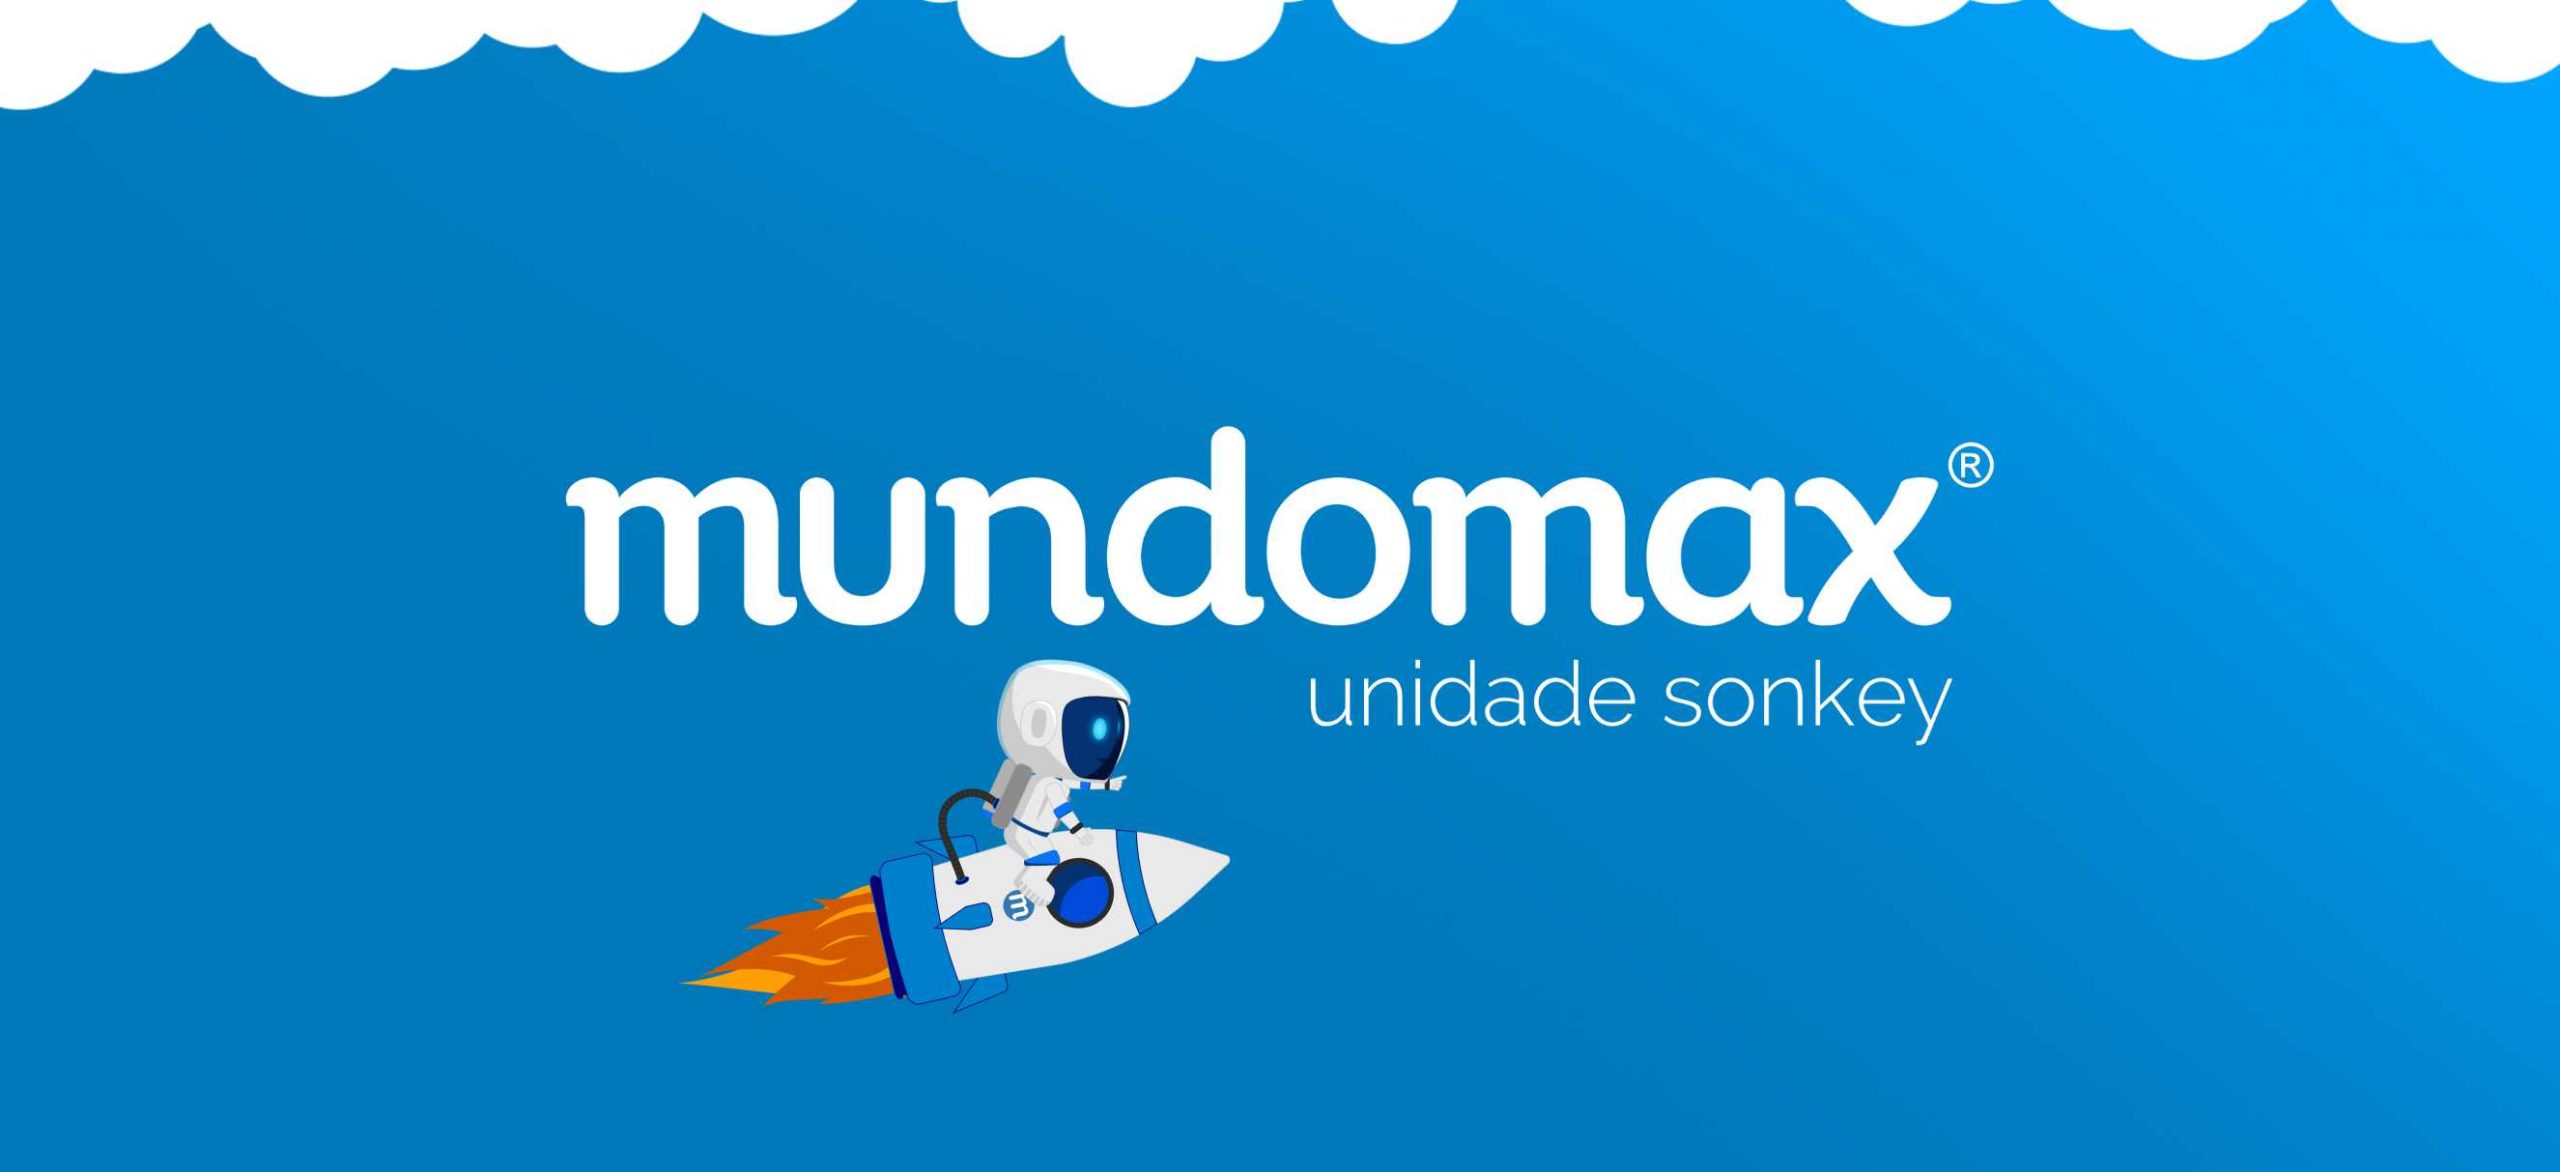 Mundomax Unidade Sonkey: a união que transformará as suas compras